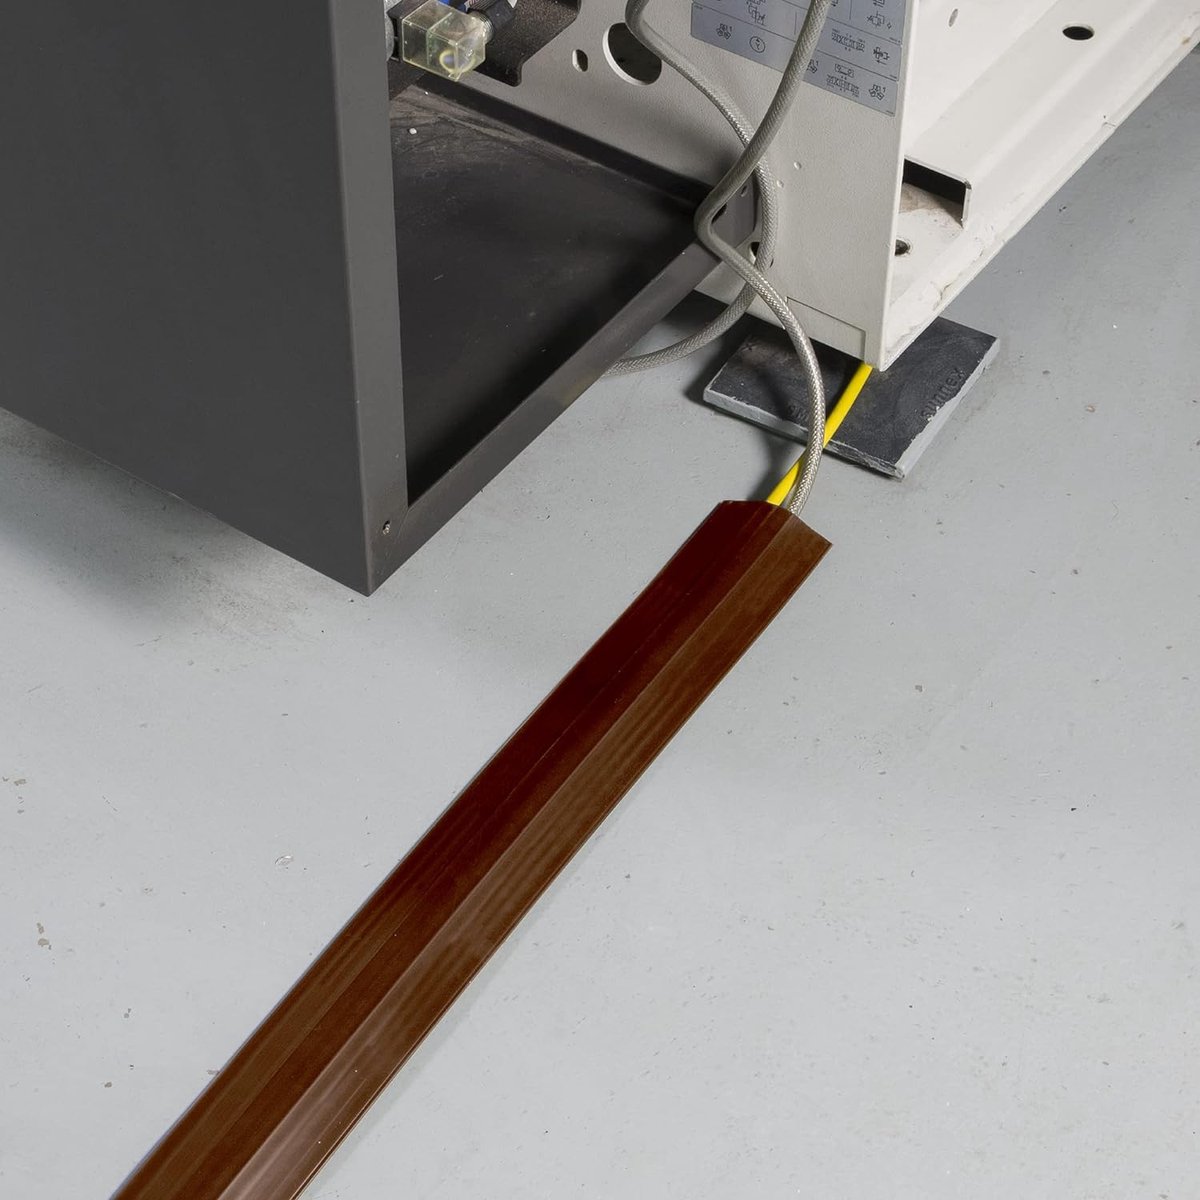 Vloerkabelbeschermer, snoerbeschermer, voorgesneden achterkant, beschermt kabels en voorkomt struikelgevaar – kabelopening 17 mm (B) x 9 mm (H) – 4,5 meter lang, bruin